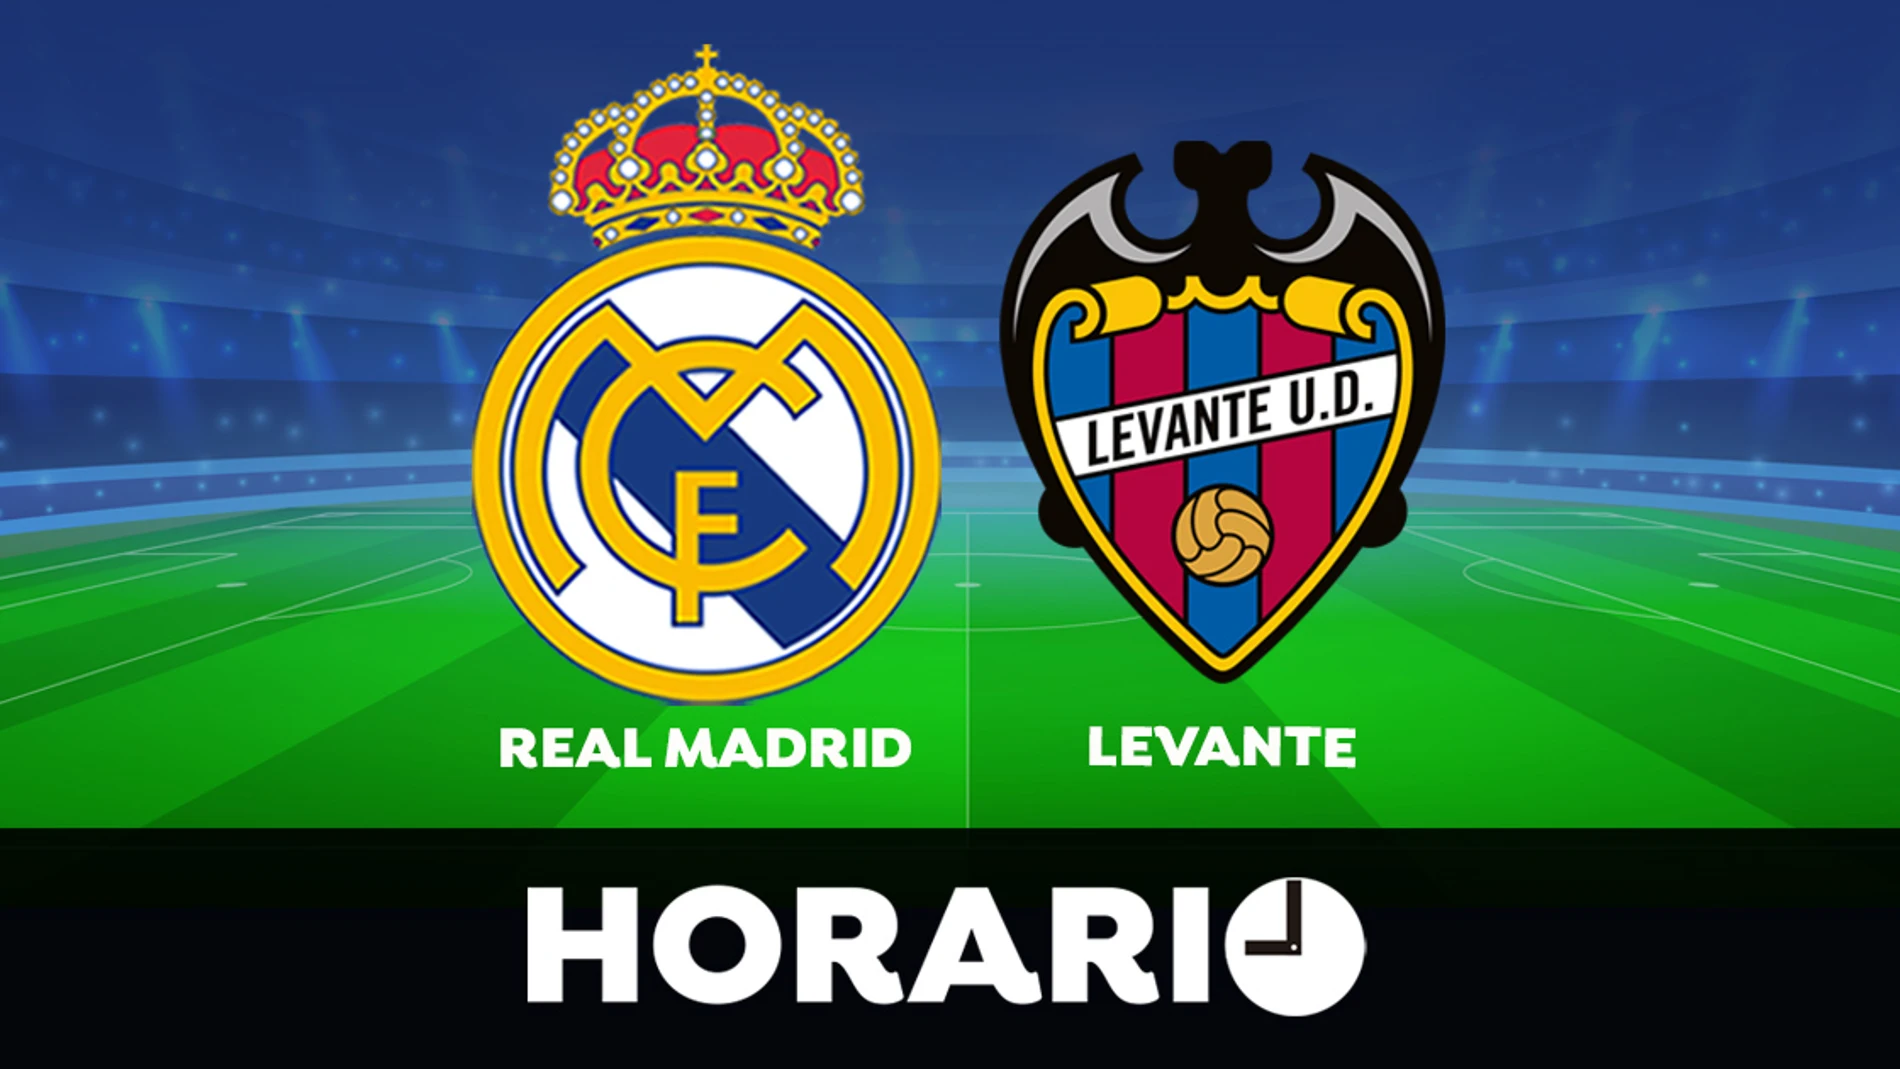 Real Madrid - Horario y dónde ver el partido de La Liga Santander